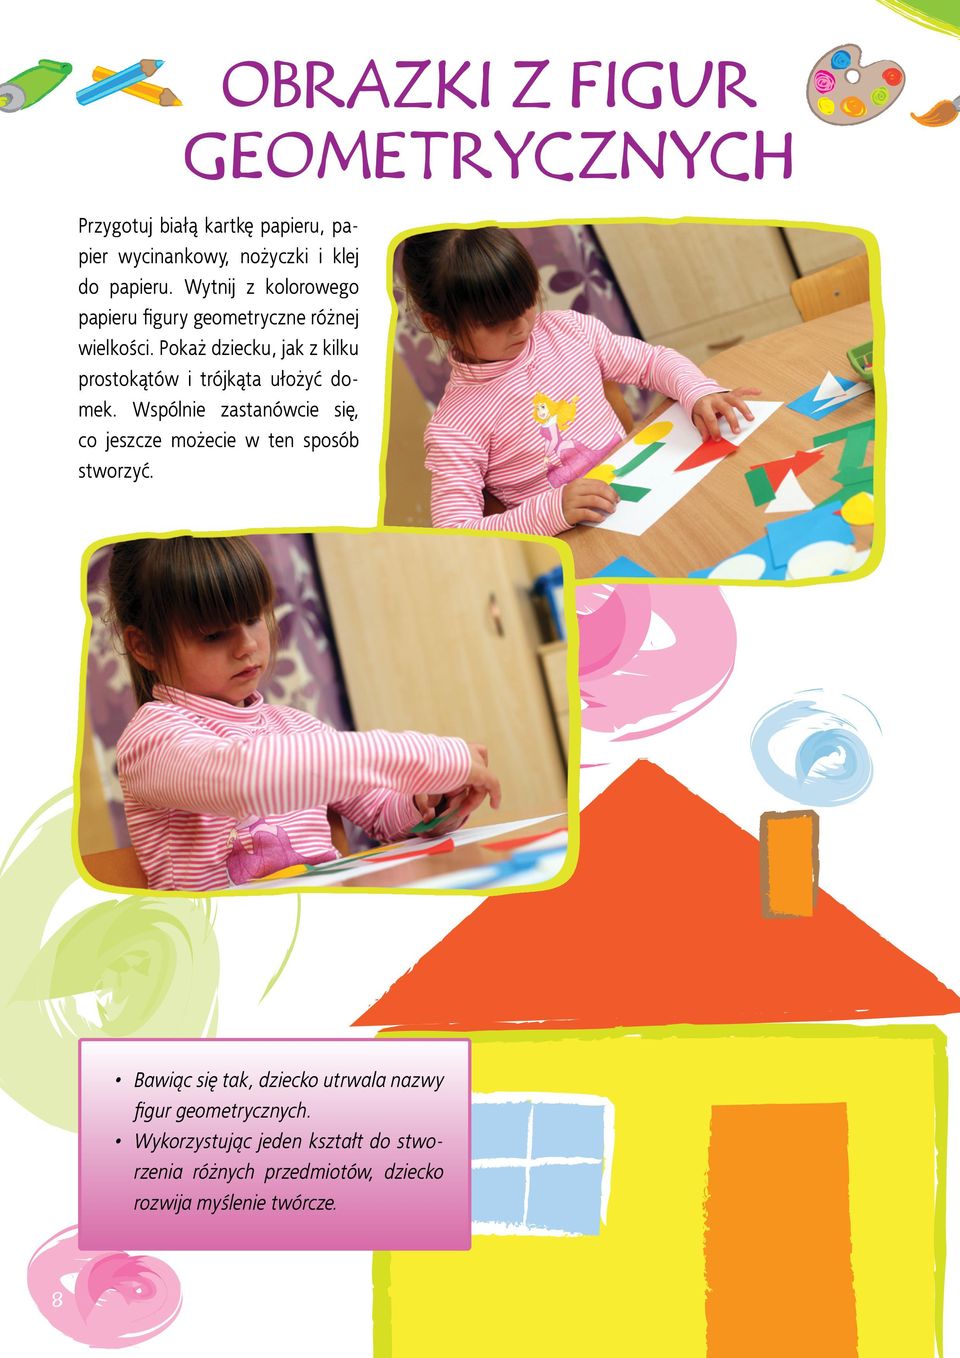 Pokaż dziecku, jak z kilku prostokątów i trójkąta ułożyć domek.